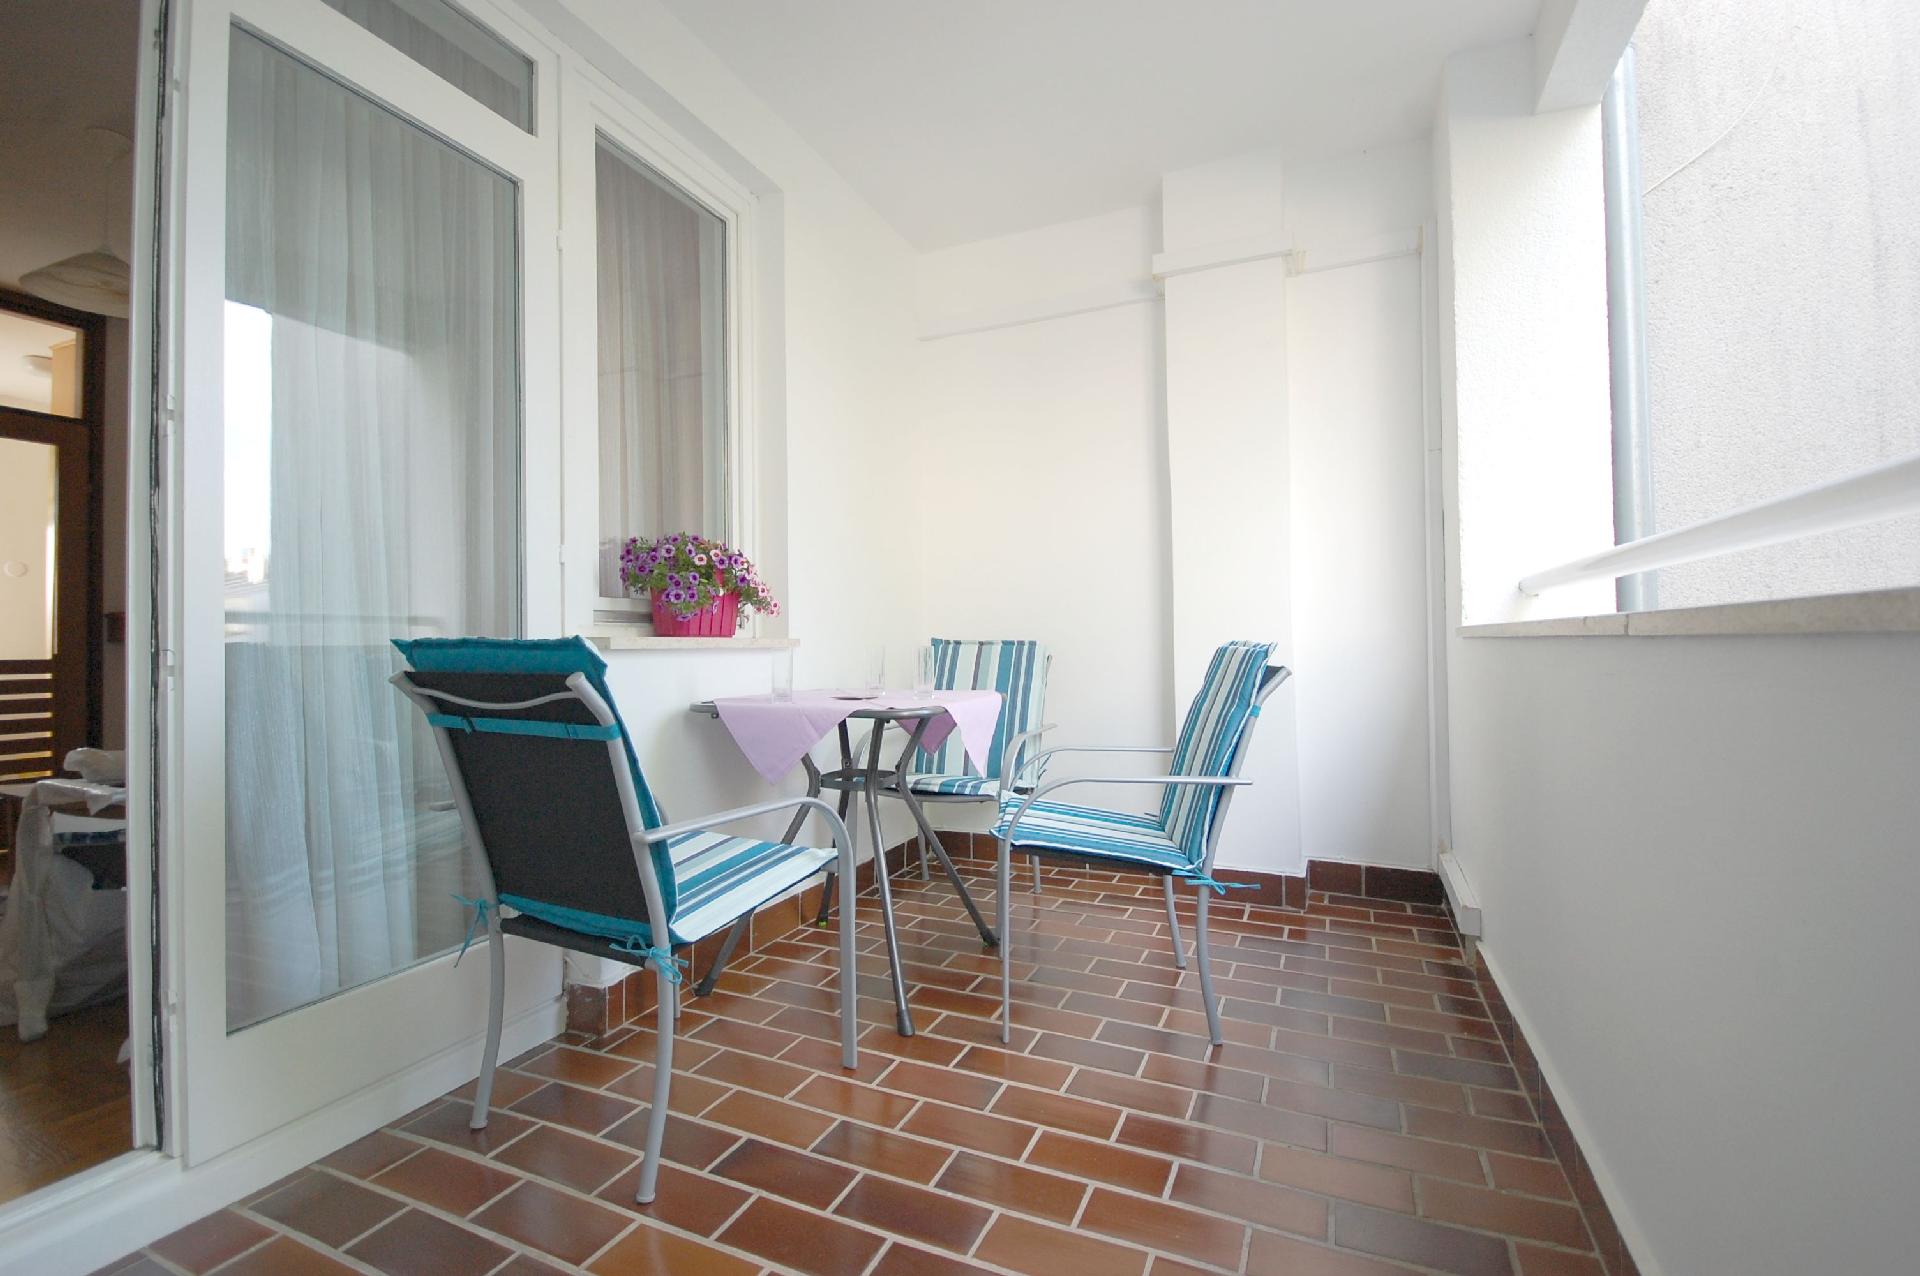 Ferienwohnung für 4 Personen ca. 50 m² i   kroatische Inseln